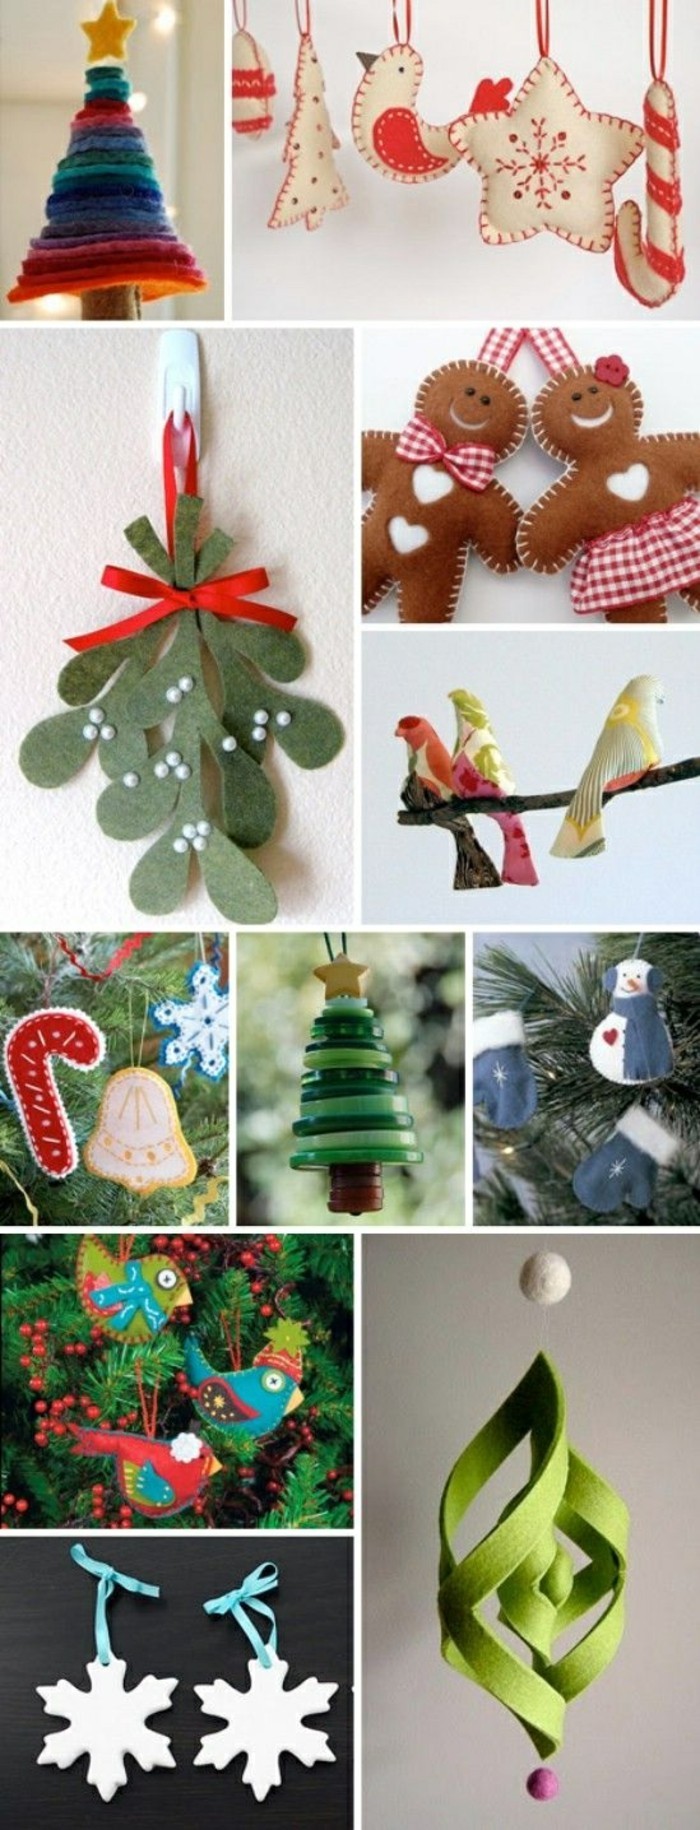 222-weihnachsschmuck-basteln-ideen-weihnachtsbaum-schmucken-diy-dekorationen